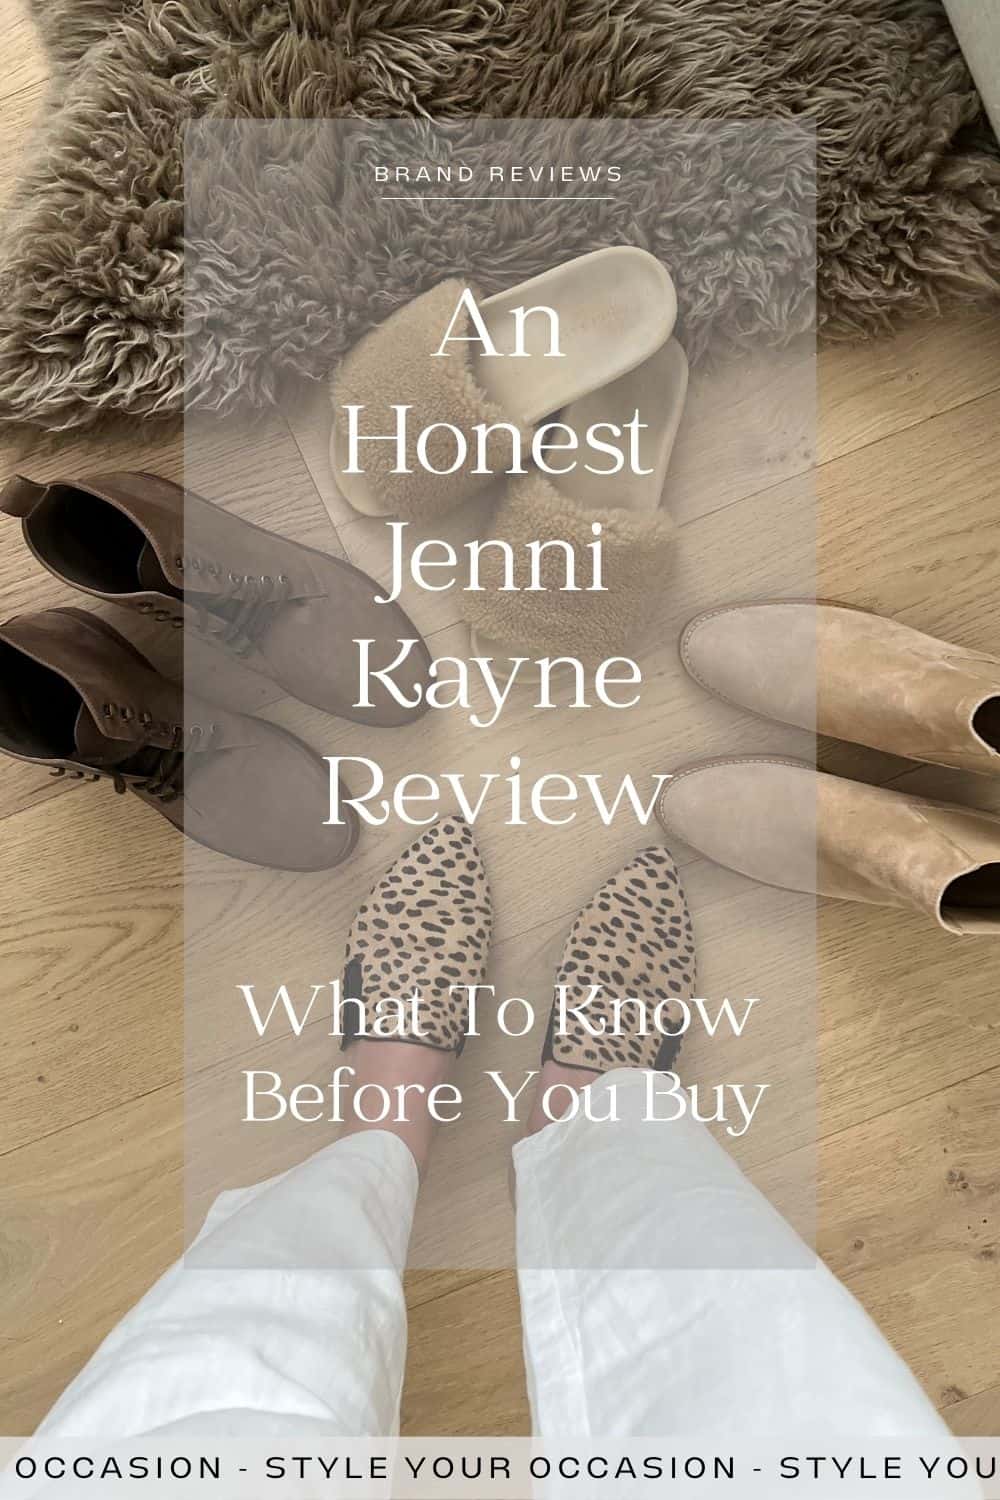 Jenni Kayne Review Pin 4 